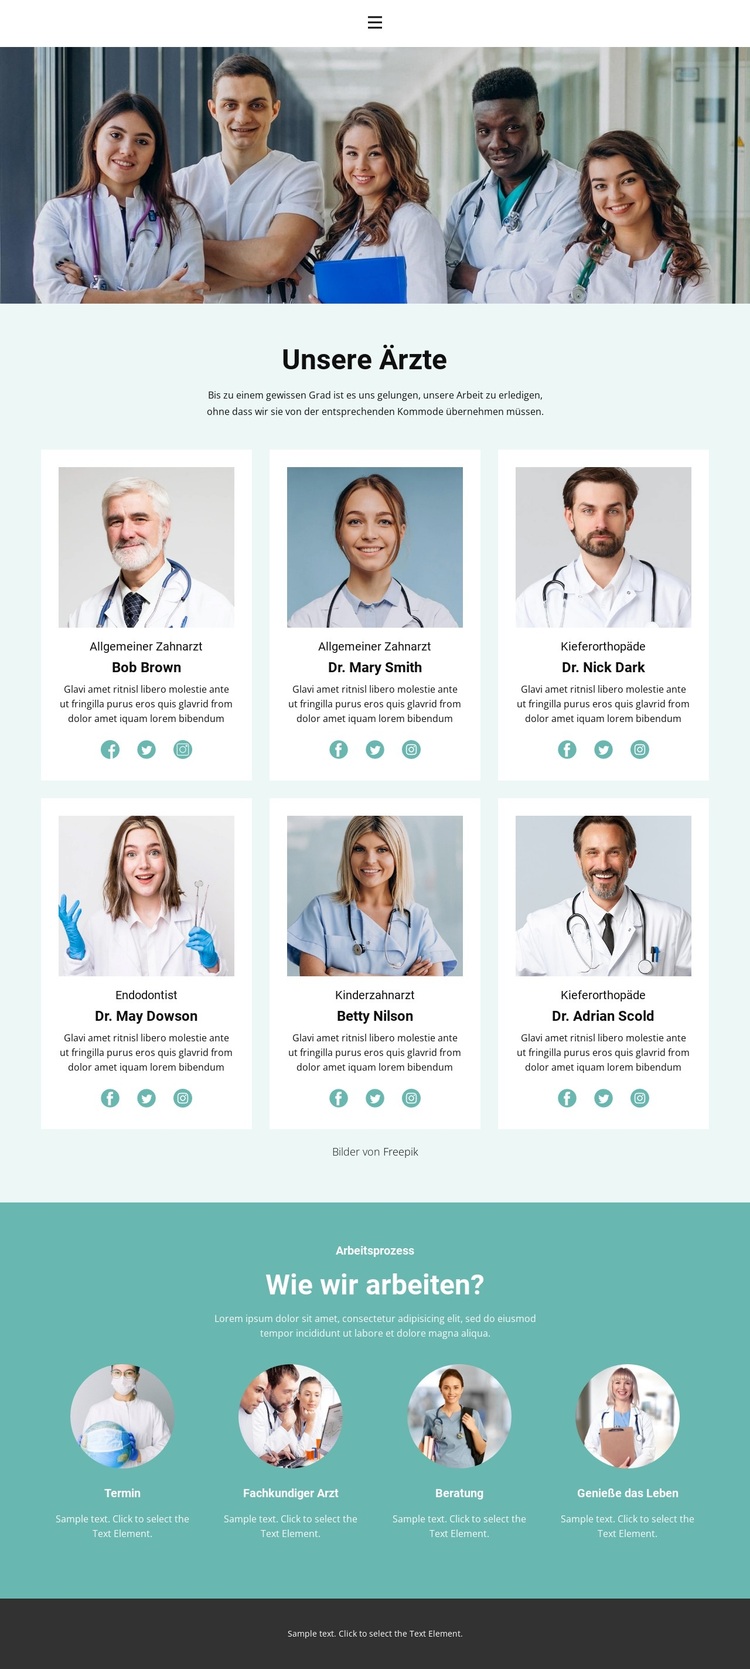 Die besten medizinischen Fachkräfte WordPress-Theme